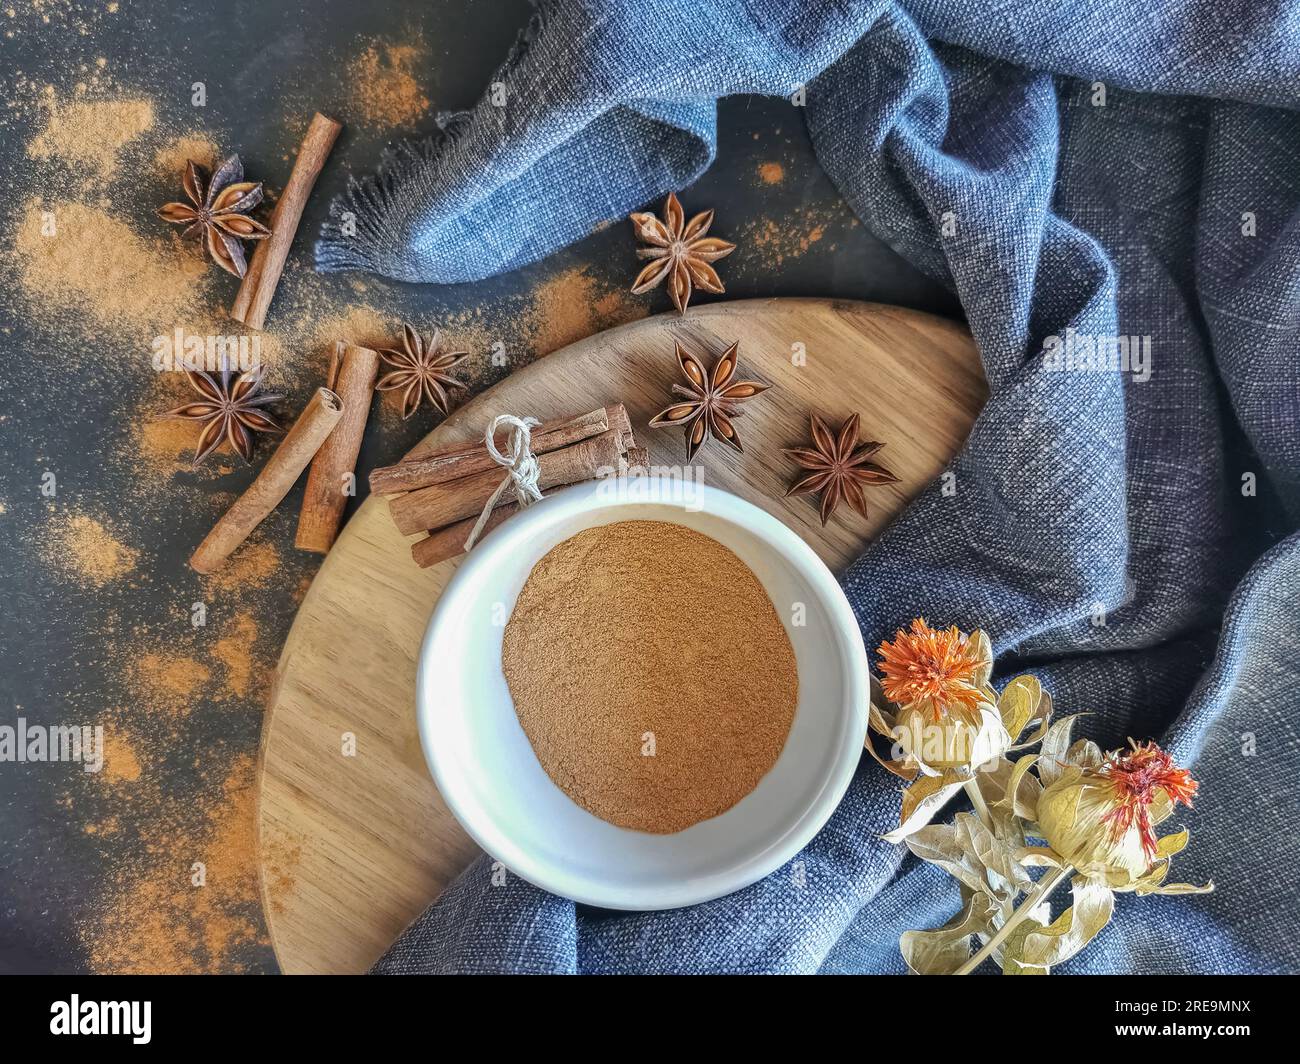 Vista sul tavolo, decorata con panini di cannella secchi e polvere di cannella all'interno di una ciotola, diversi fiori di anice secchi, stoffa rustica... Foto Stock